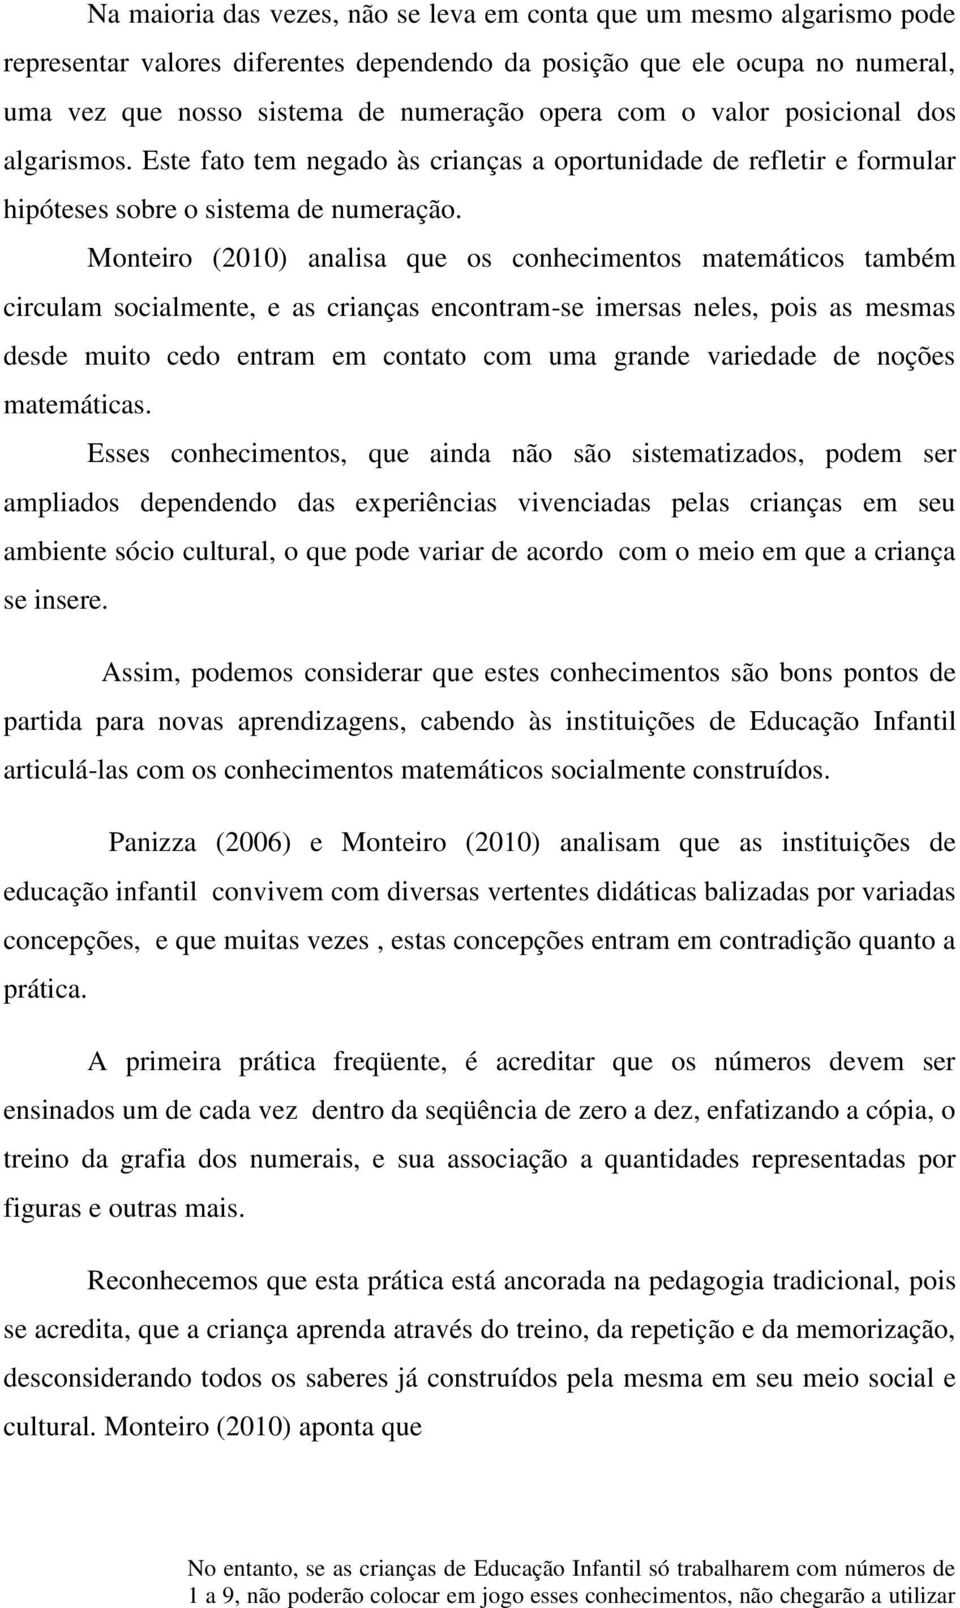 Monteiro (2010) analisa que os conhecimentos matemáticos também circulam socialmente, e as crianças encontram-se imersas neles, pois as mesmas desde muito cedo entram em contato com uma grande